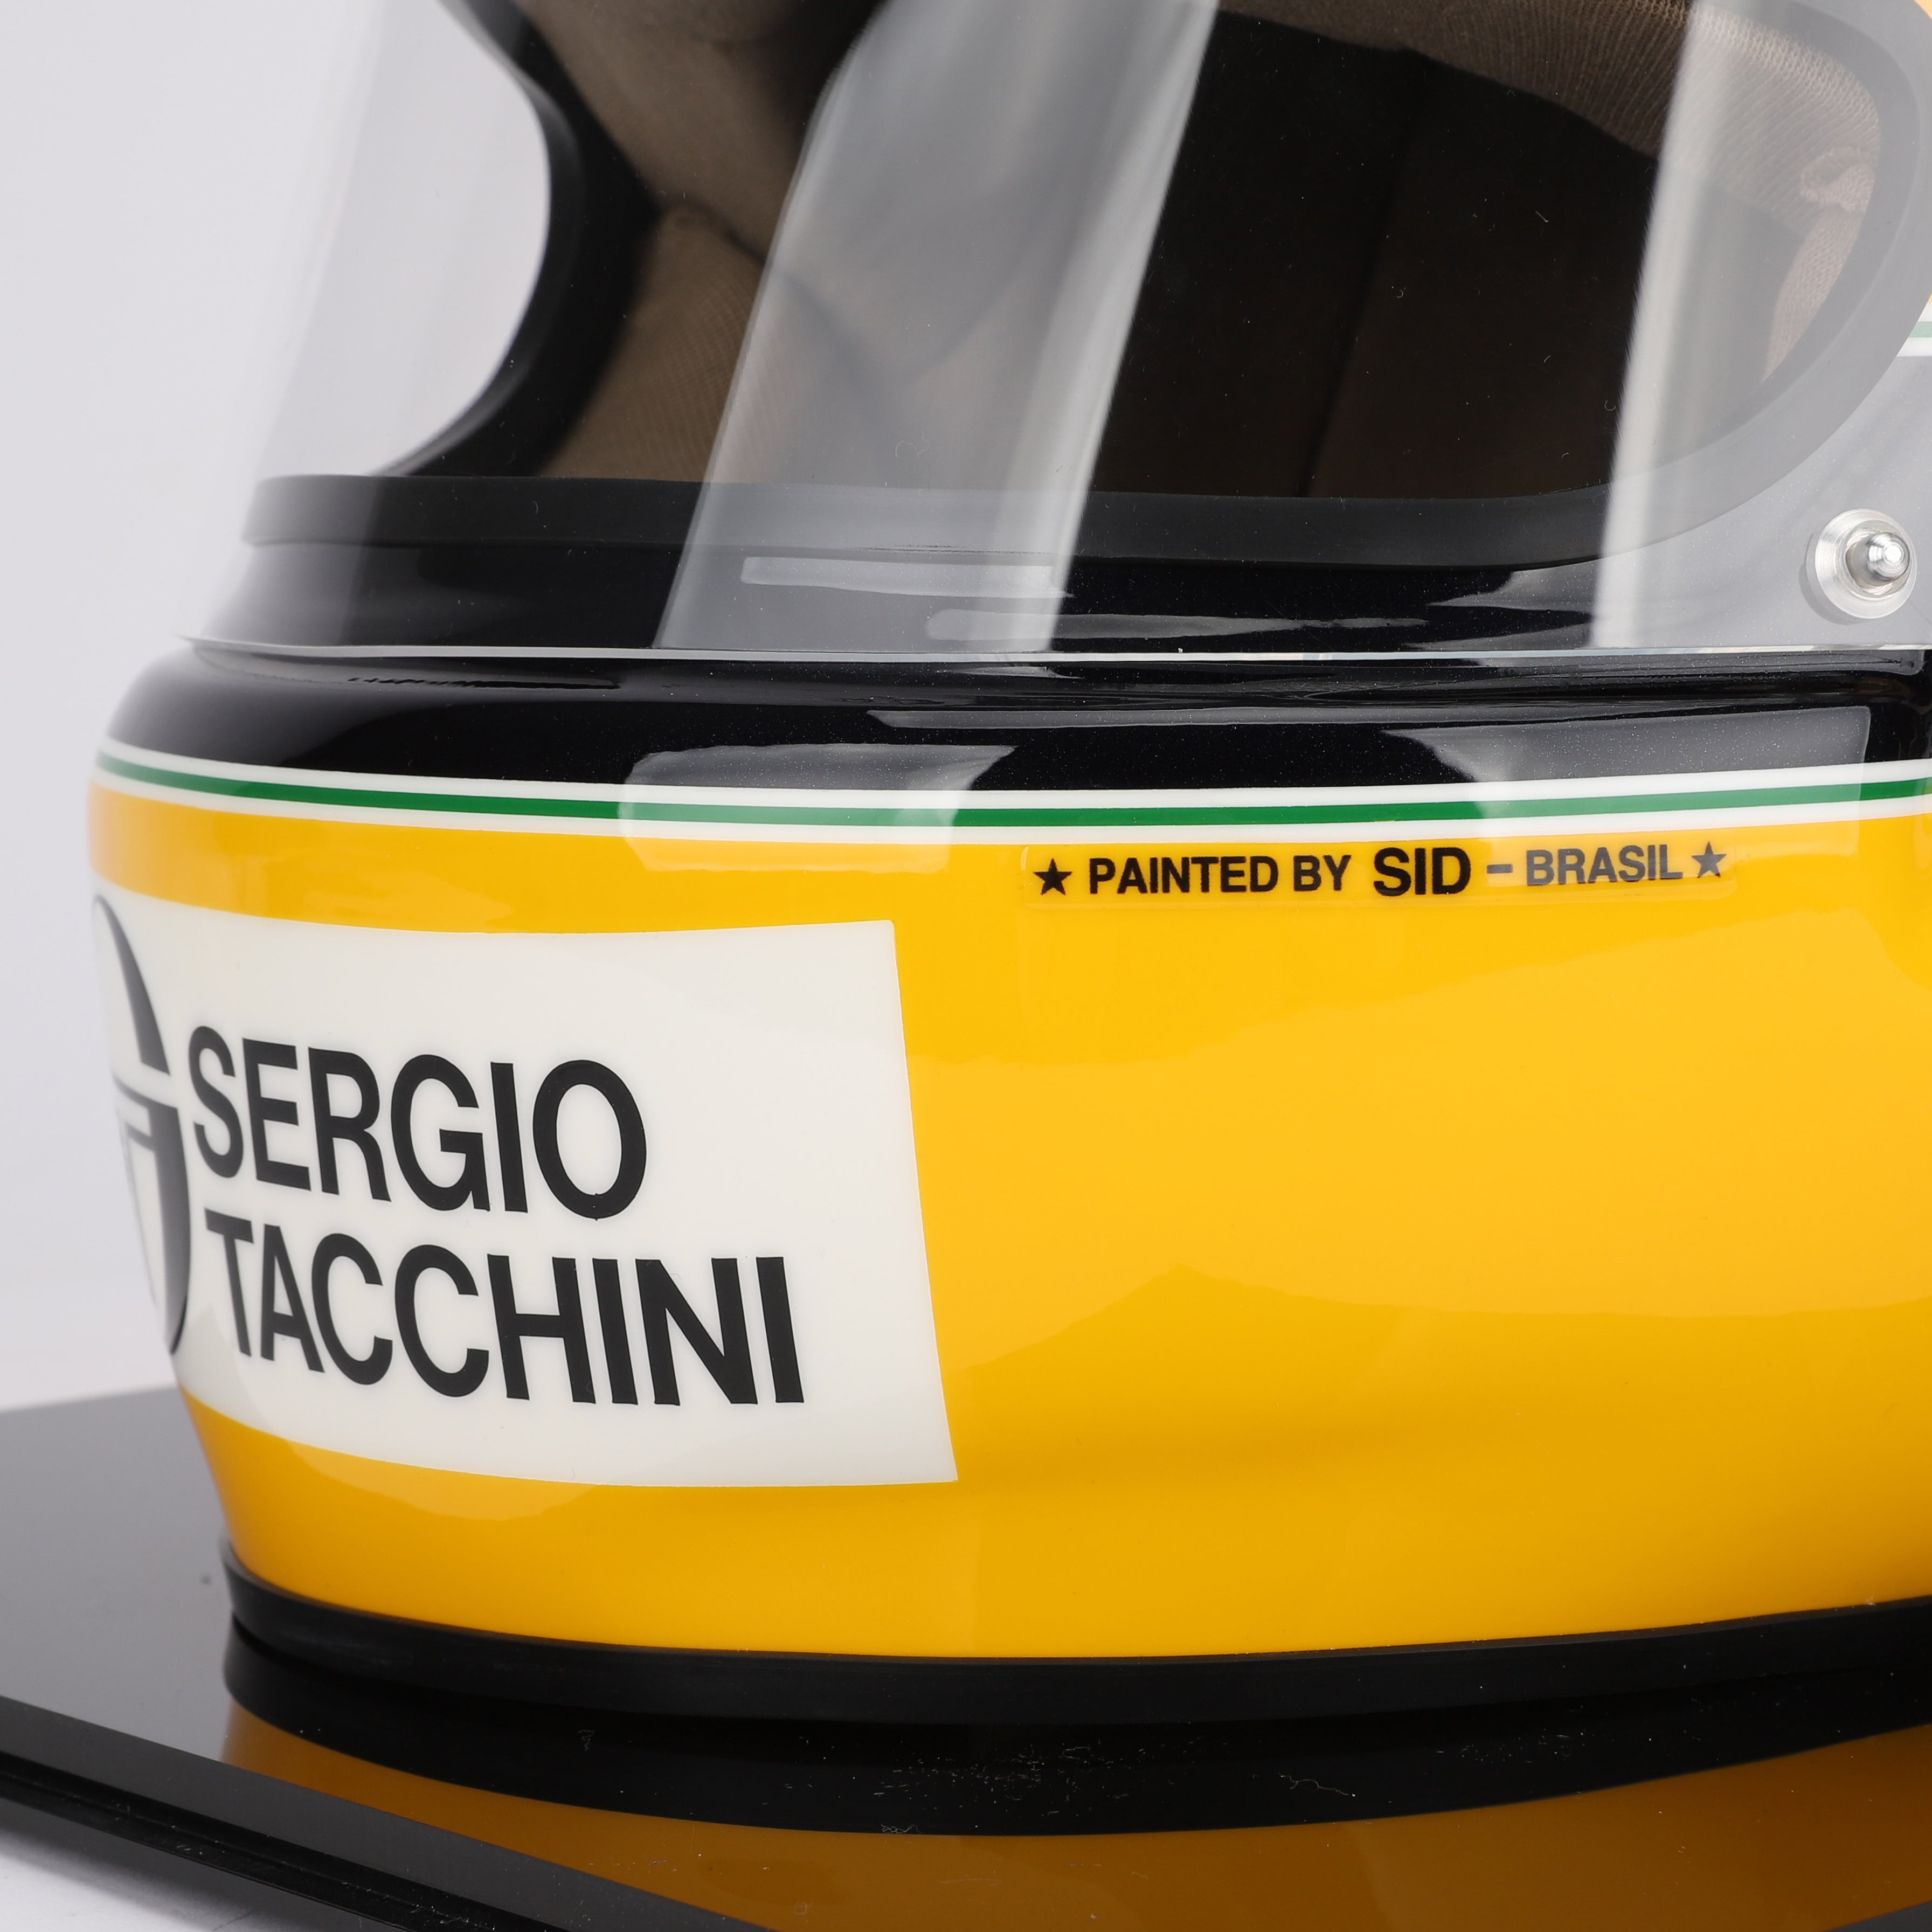 Officially Licensed Ayrton Senna 1984 Replica Helmet